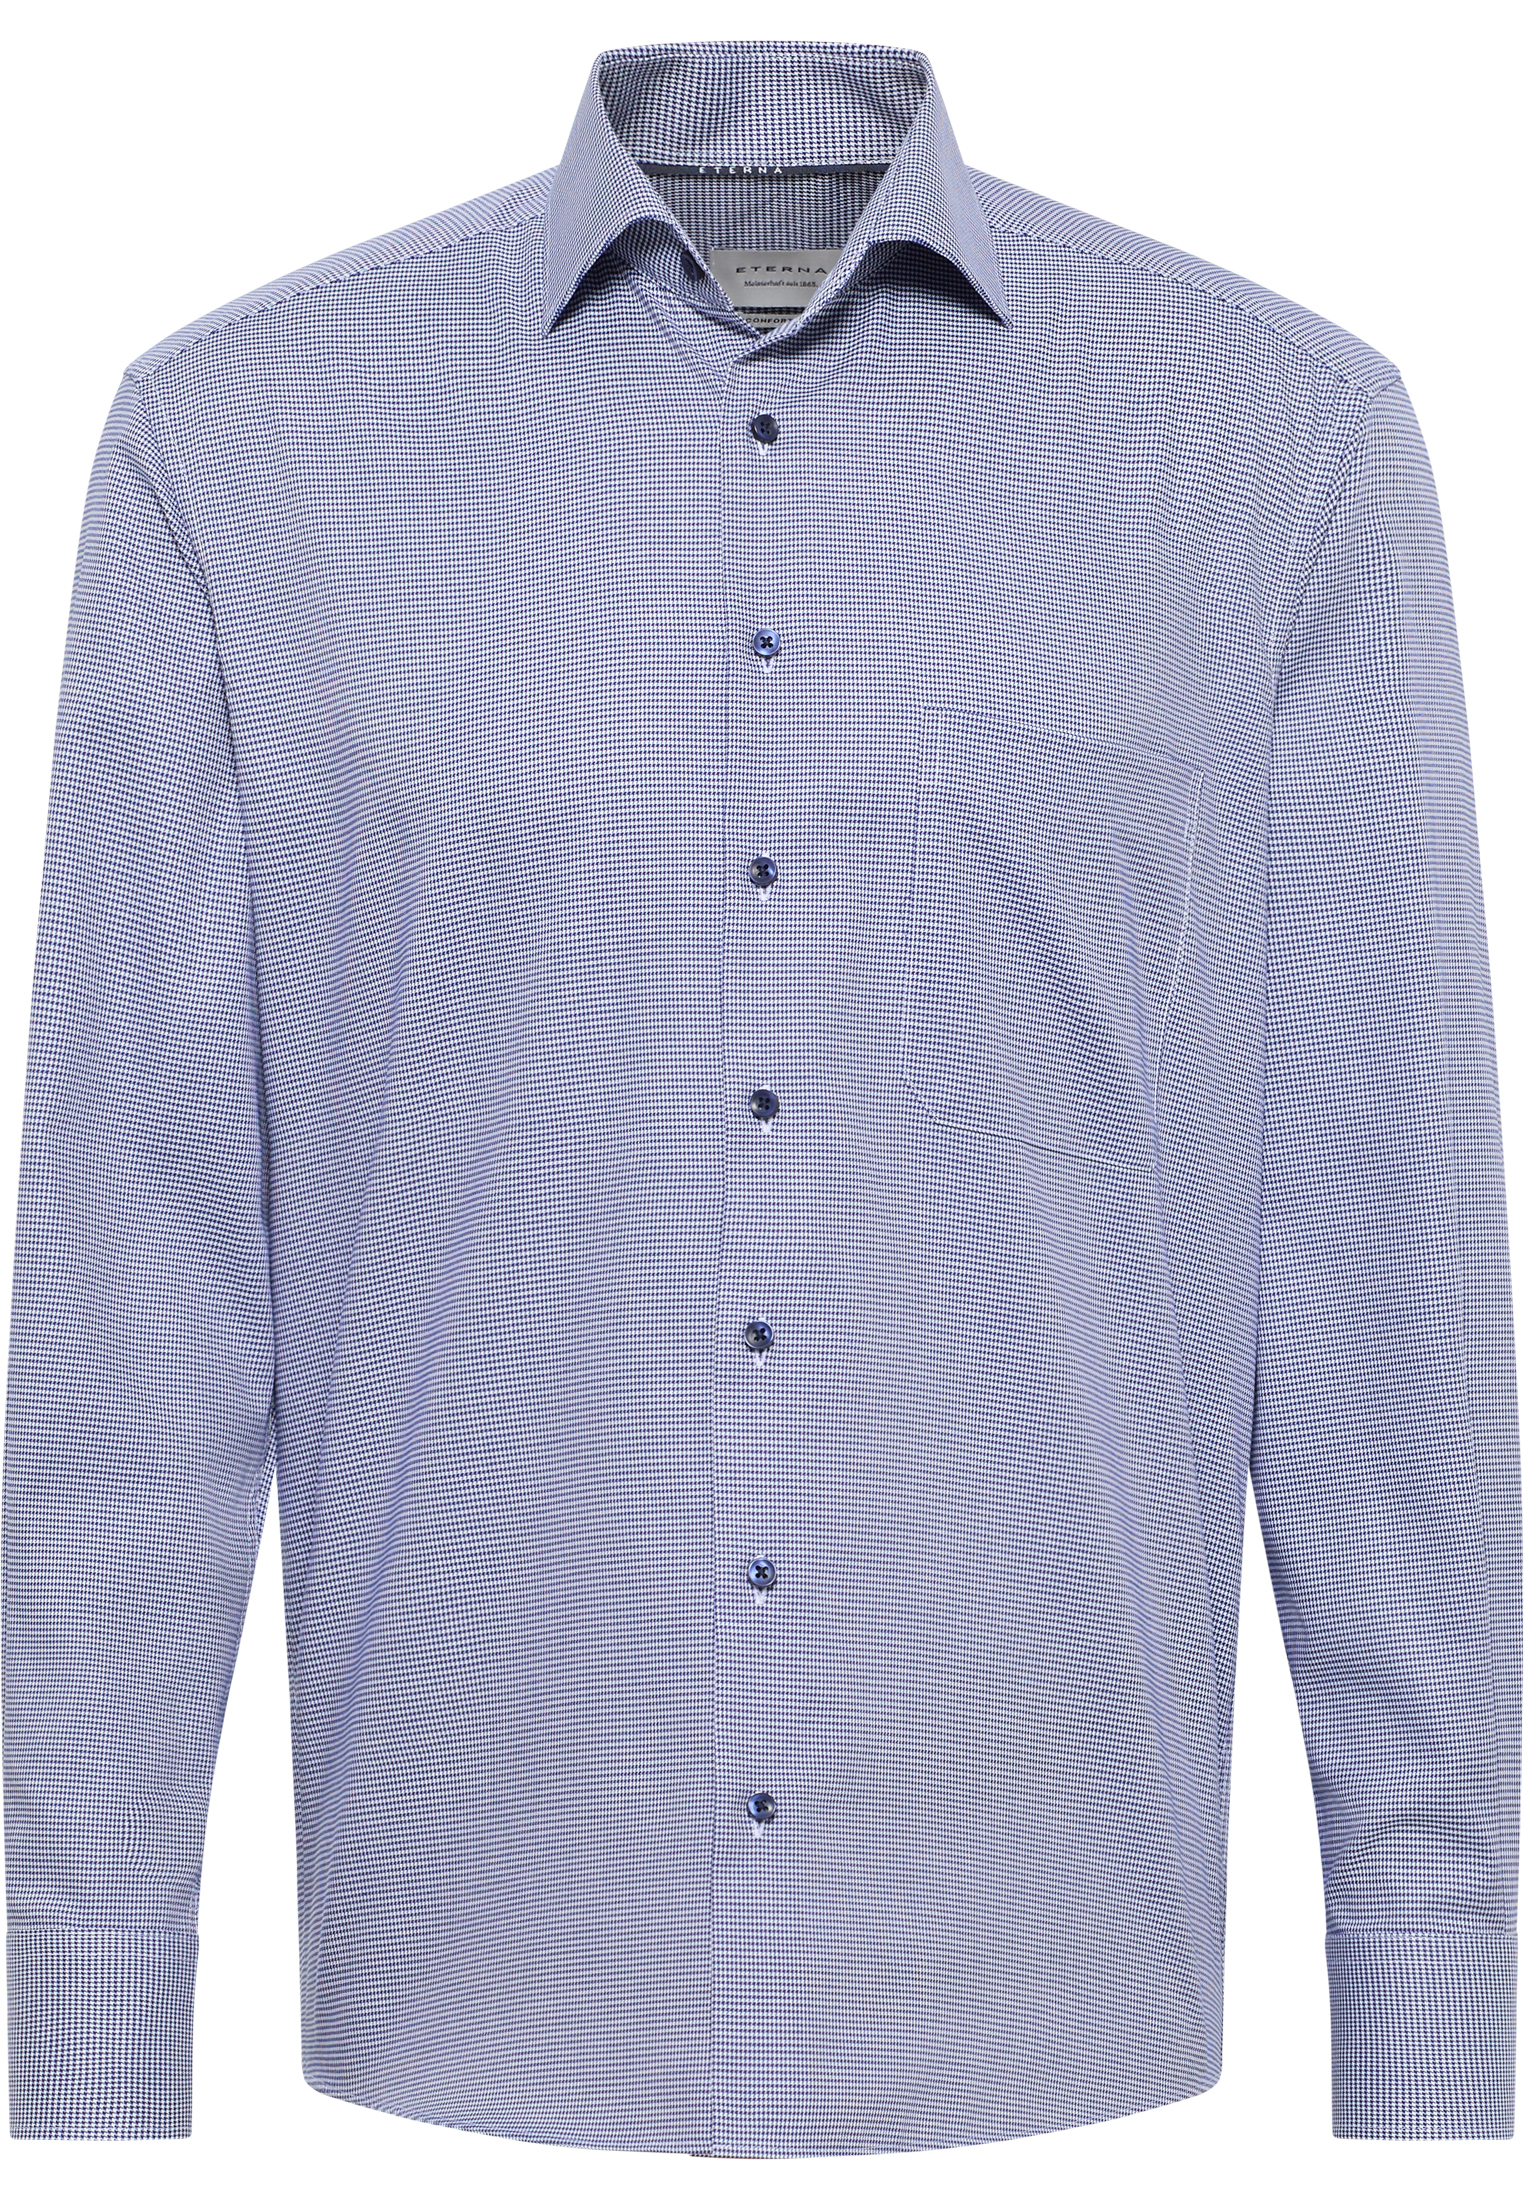 COMFORT FIT Overhemd in donkerblauw geruit